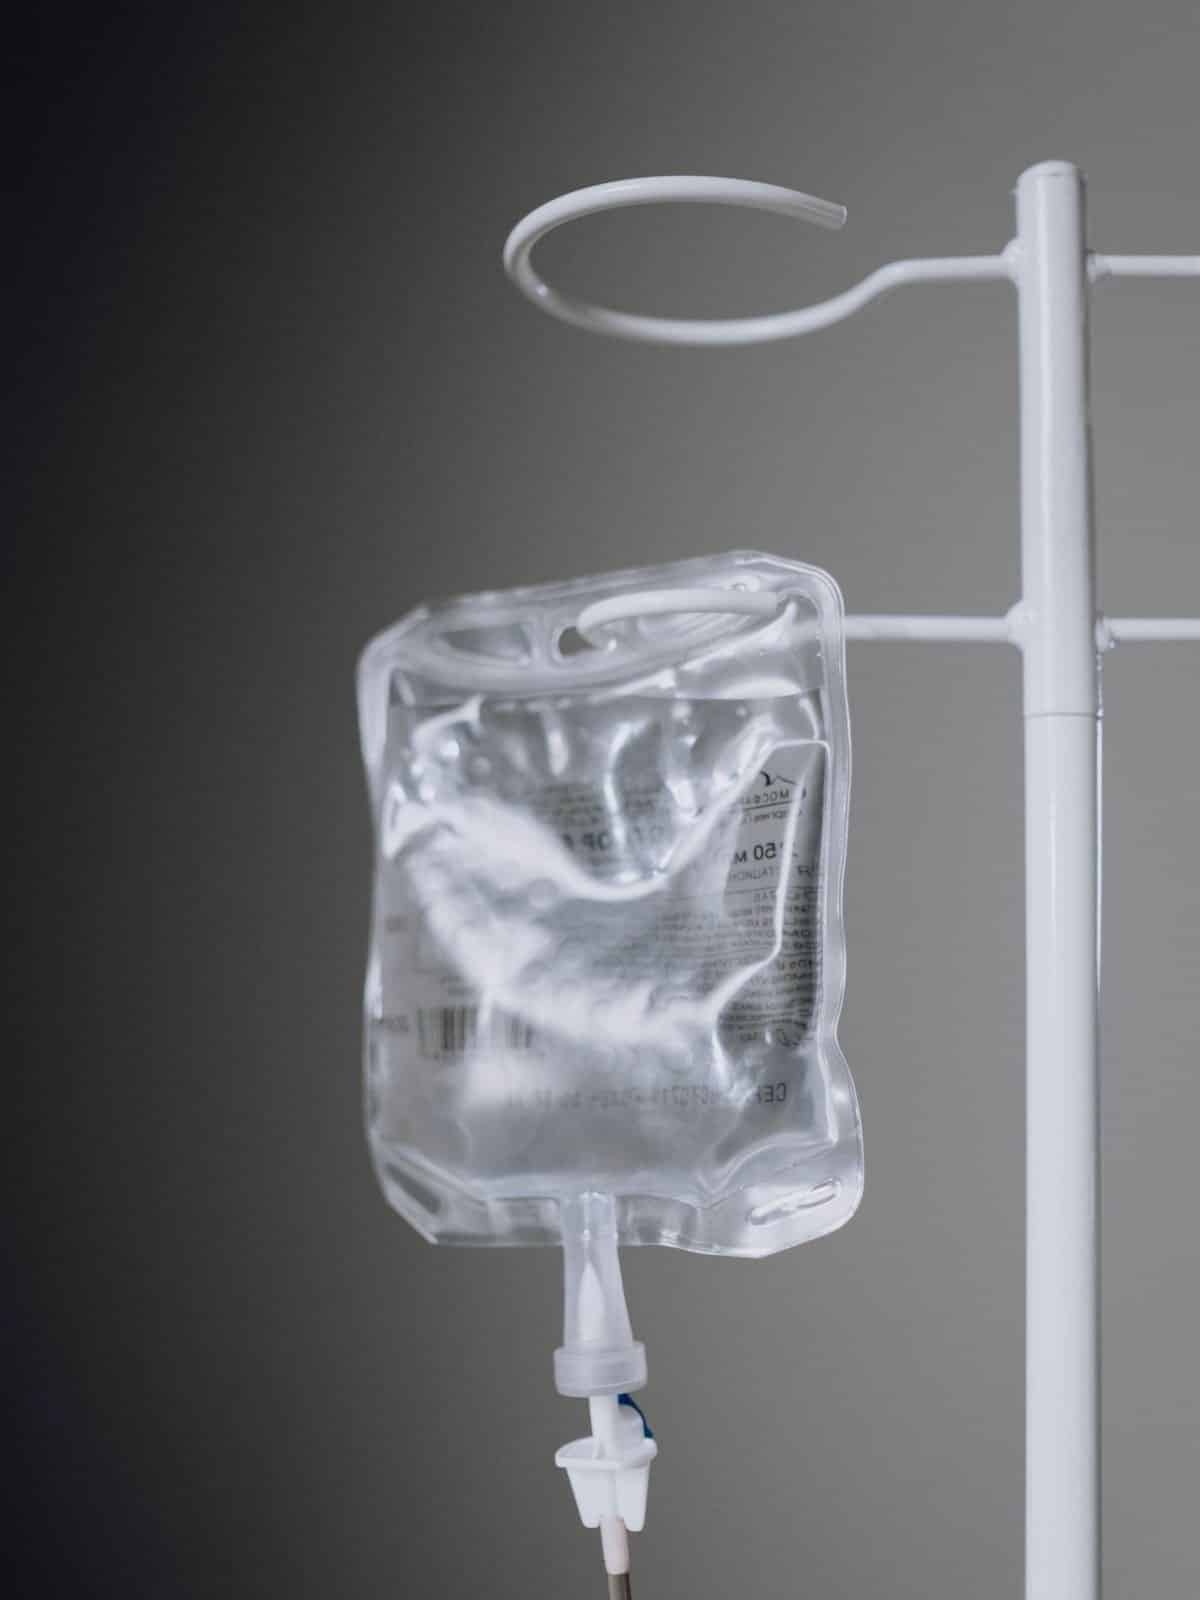 Photo of IV fluid bag hanging on white IV pole.